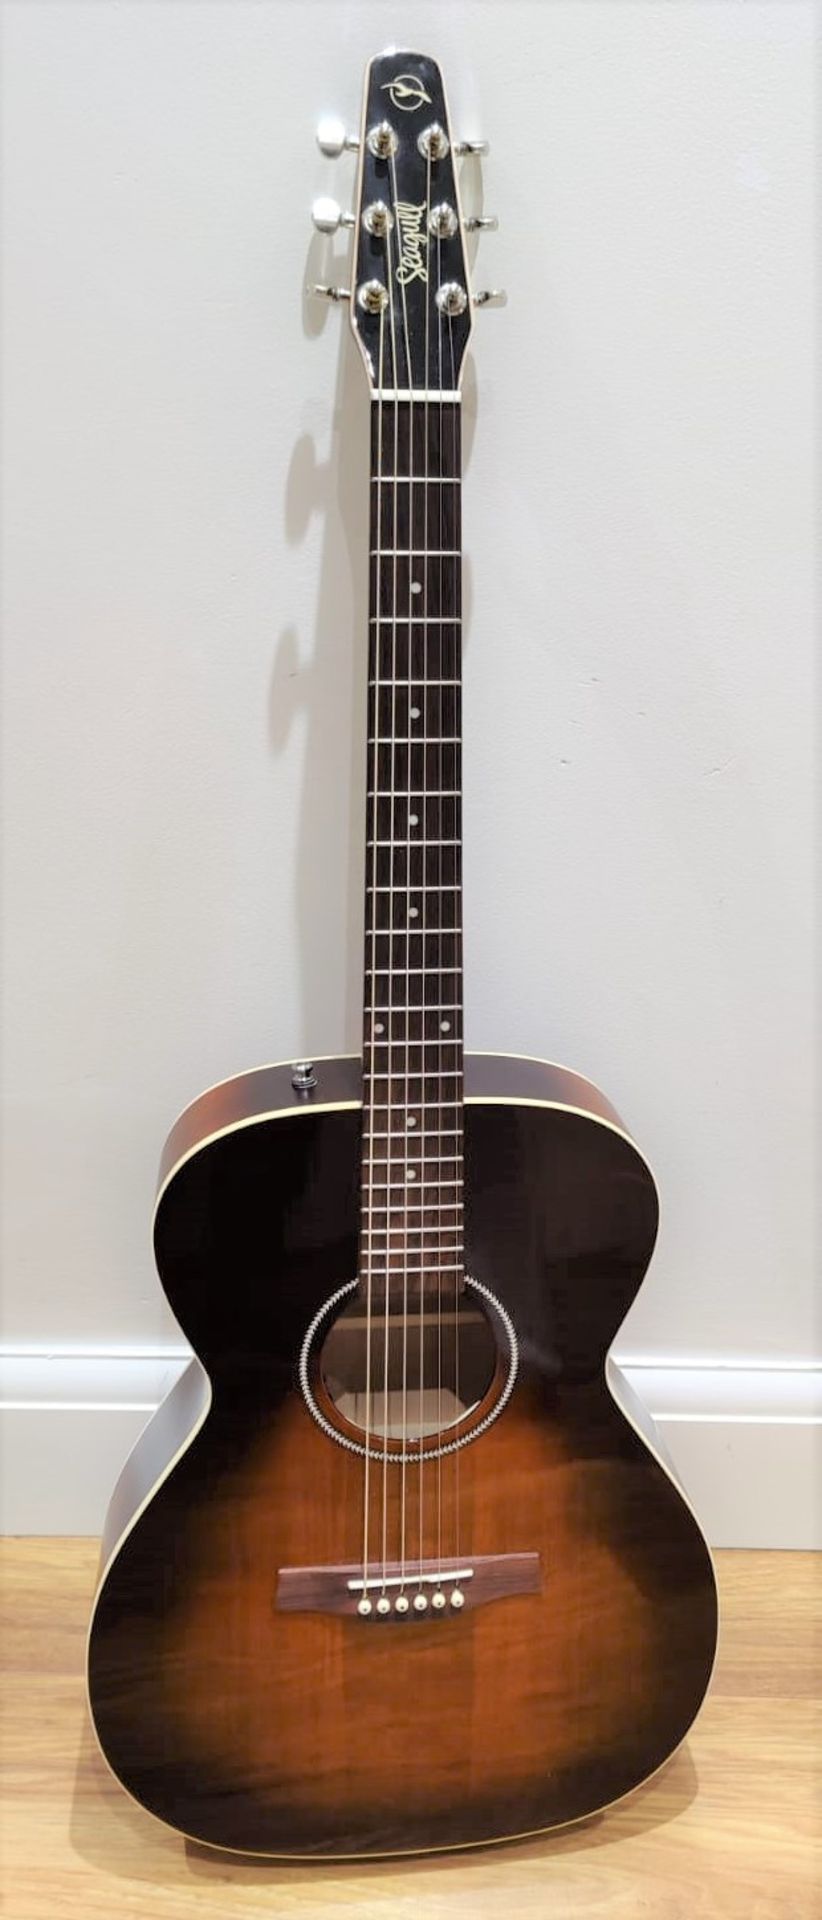 1 x Seagull S6 Original Slim Burnt Umber Dreadnaught Electro Acoustic Guitar - RRP £600 - Very - Image 3 of 14